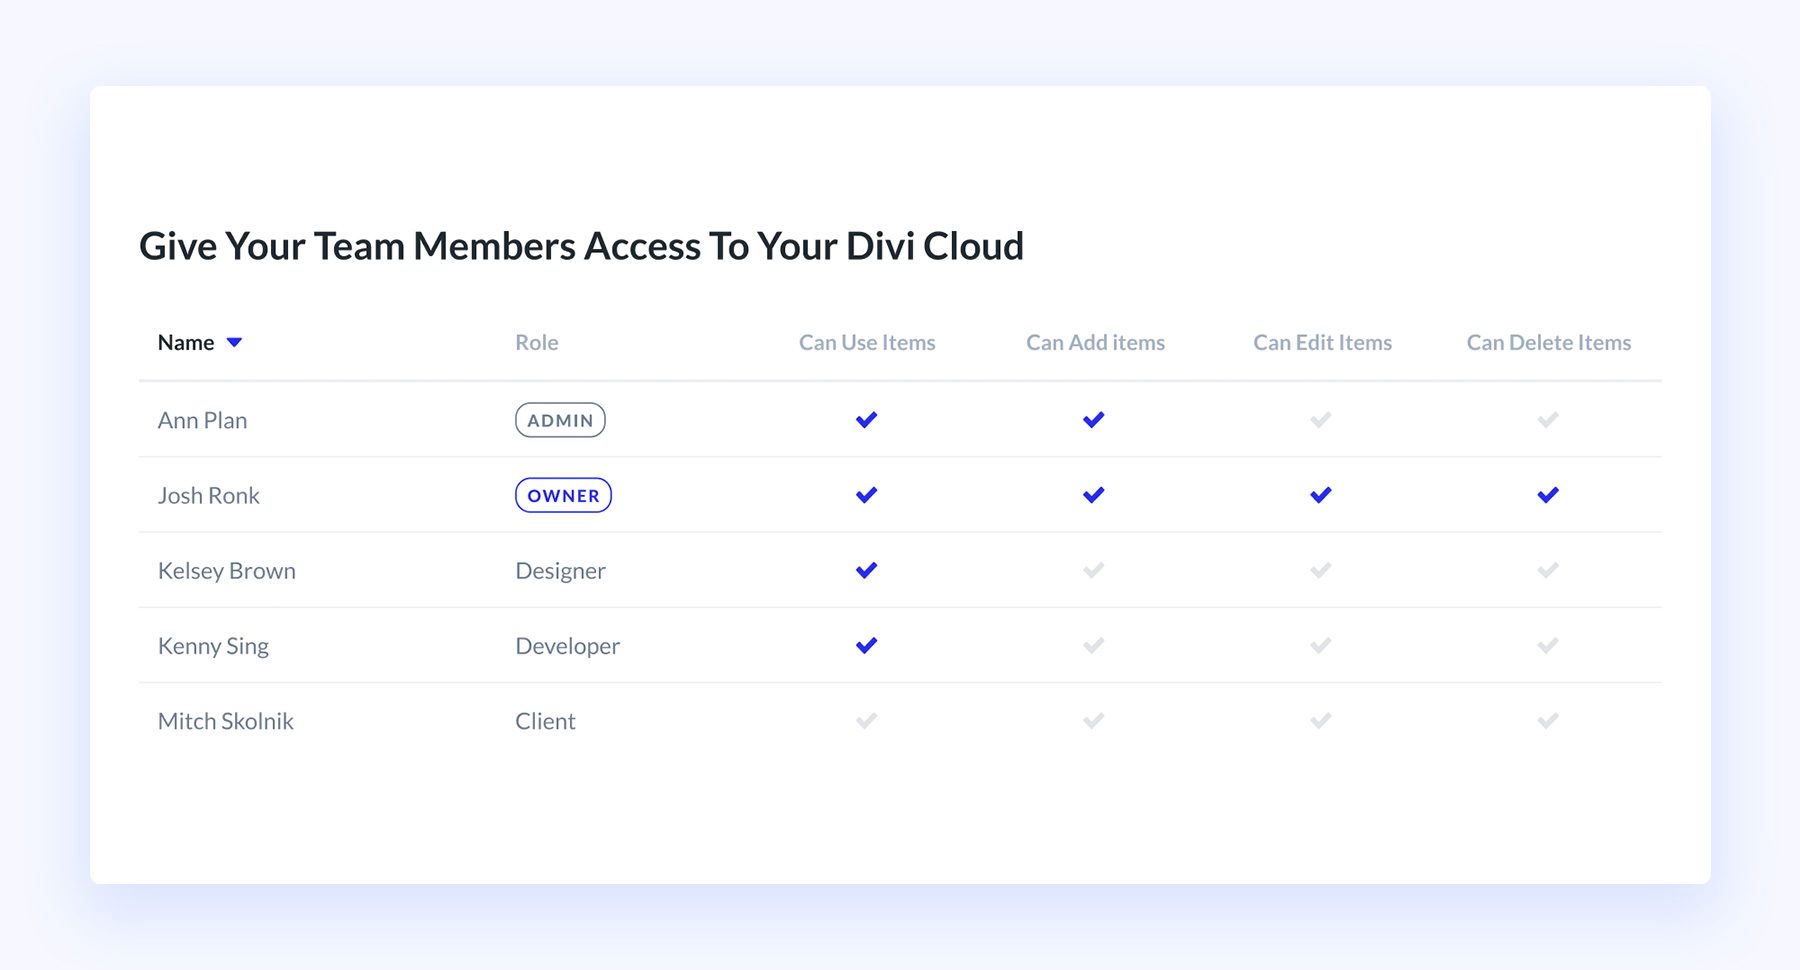 معرفی تیم های Divi! تیم خود را دعوت کنید و به آنها اجازه دسترسی به خدمات Divi خود را بدهید.